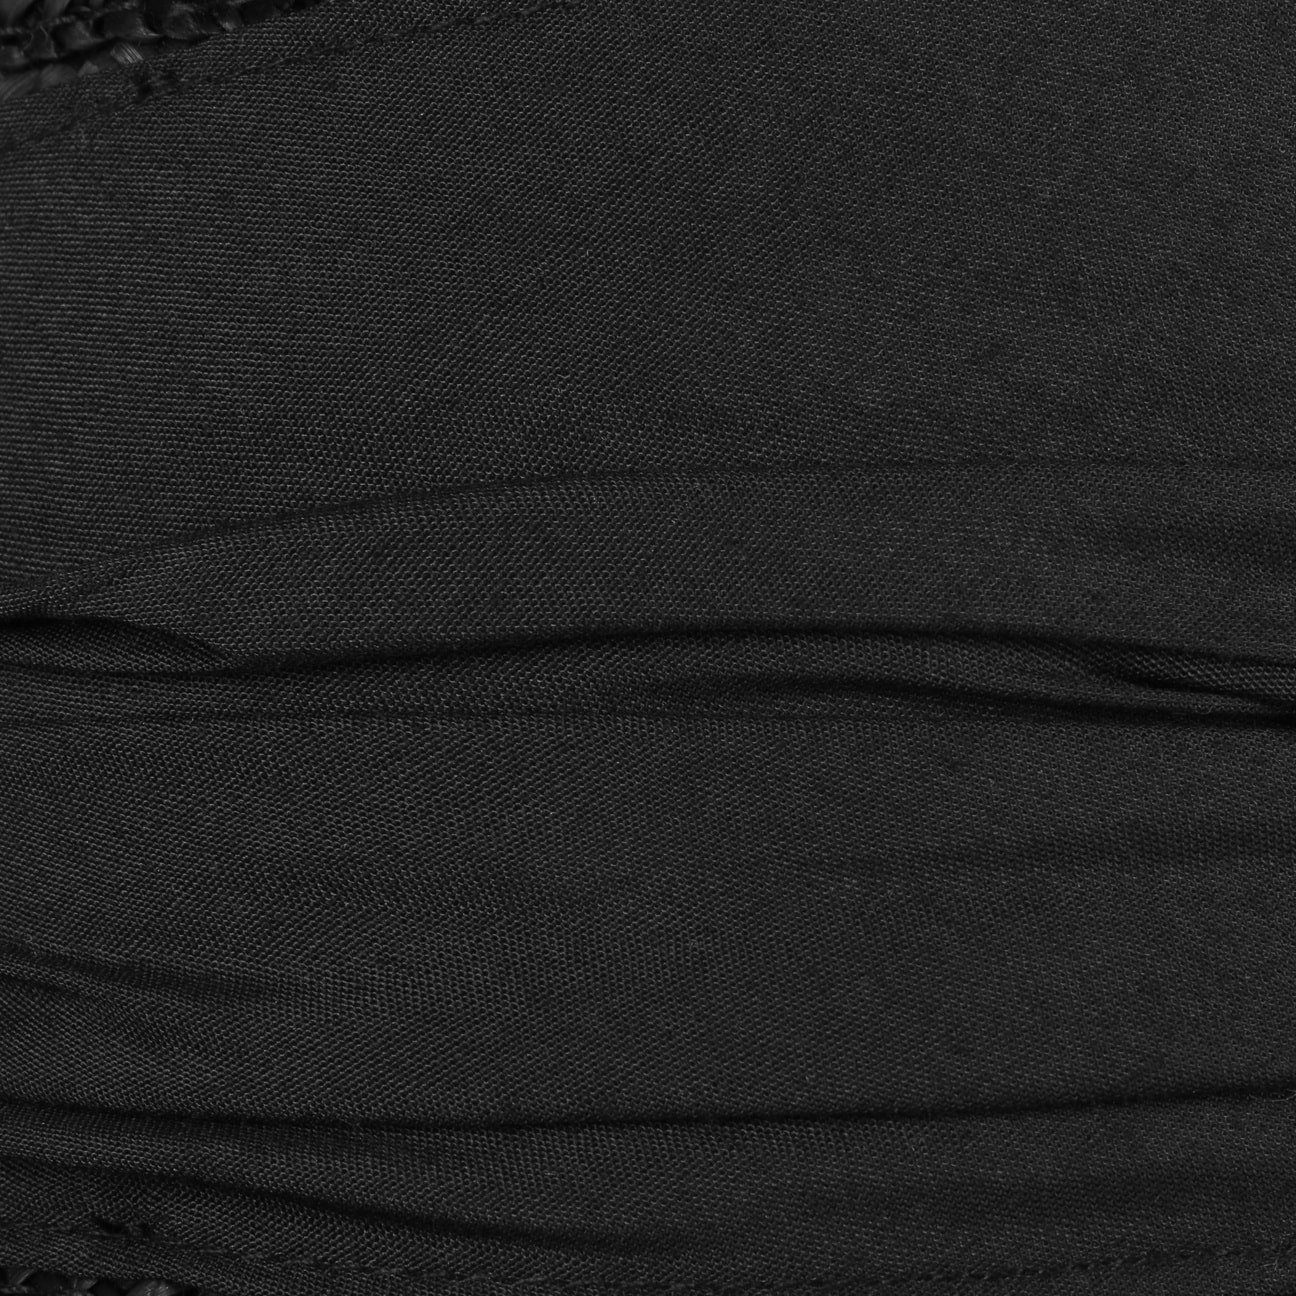 Seeberger Sonnenhut (1-St) Strohglocke mit schwarz Ripsband